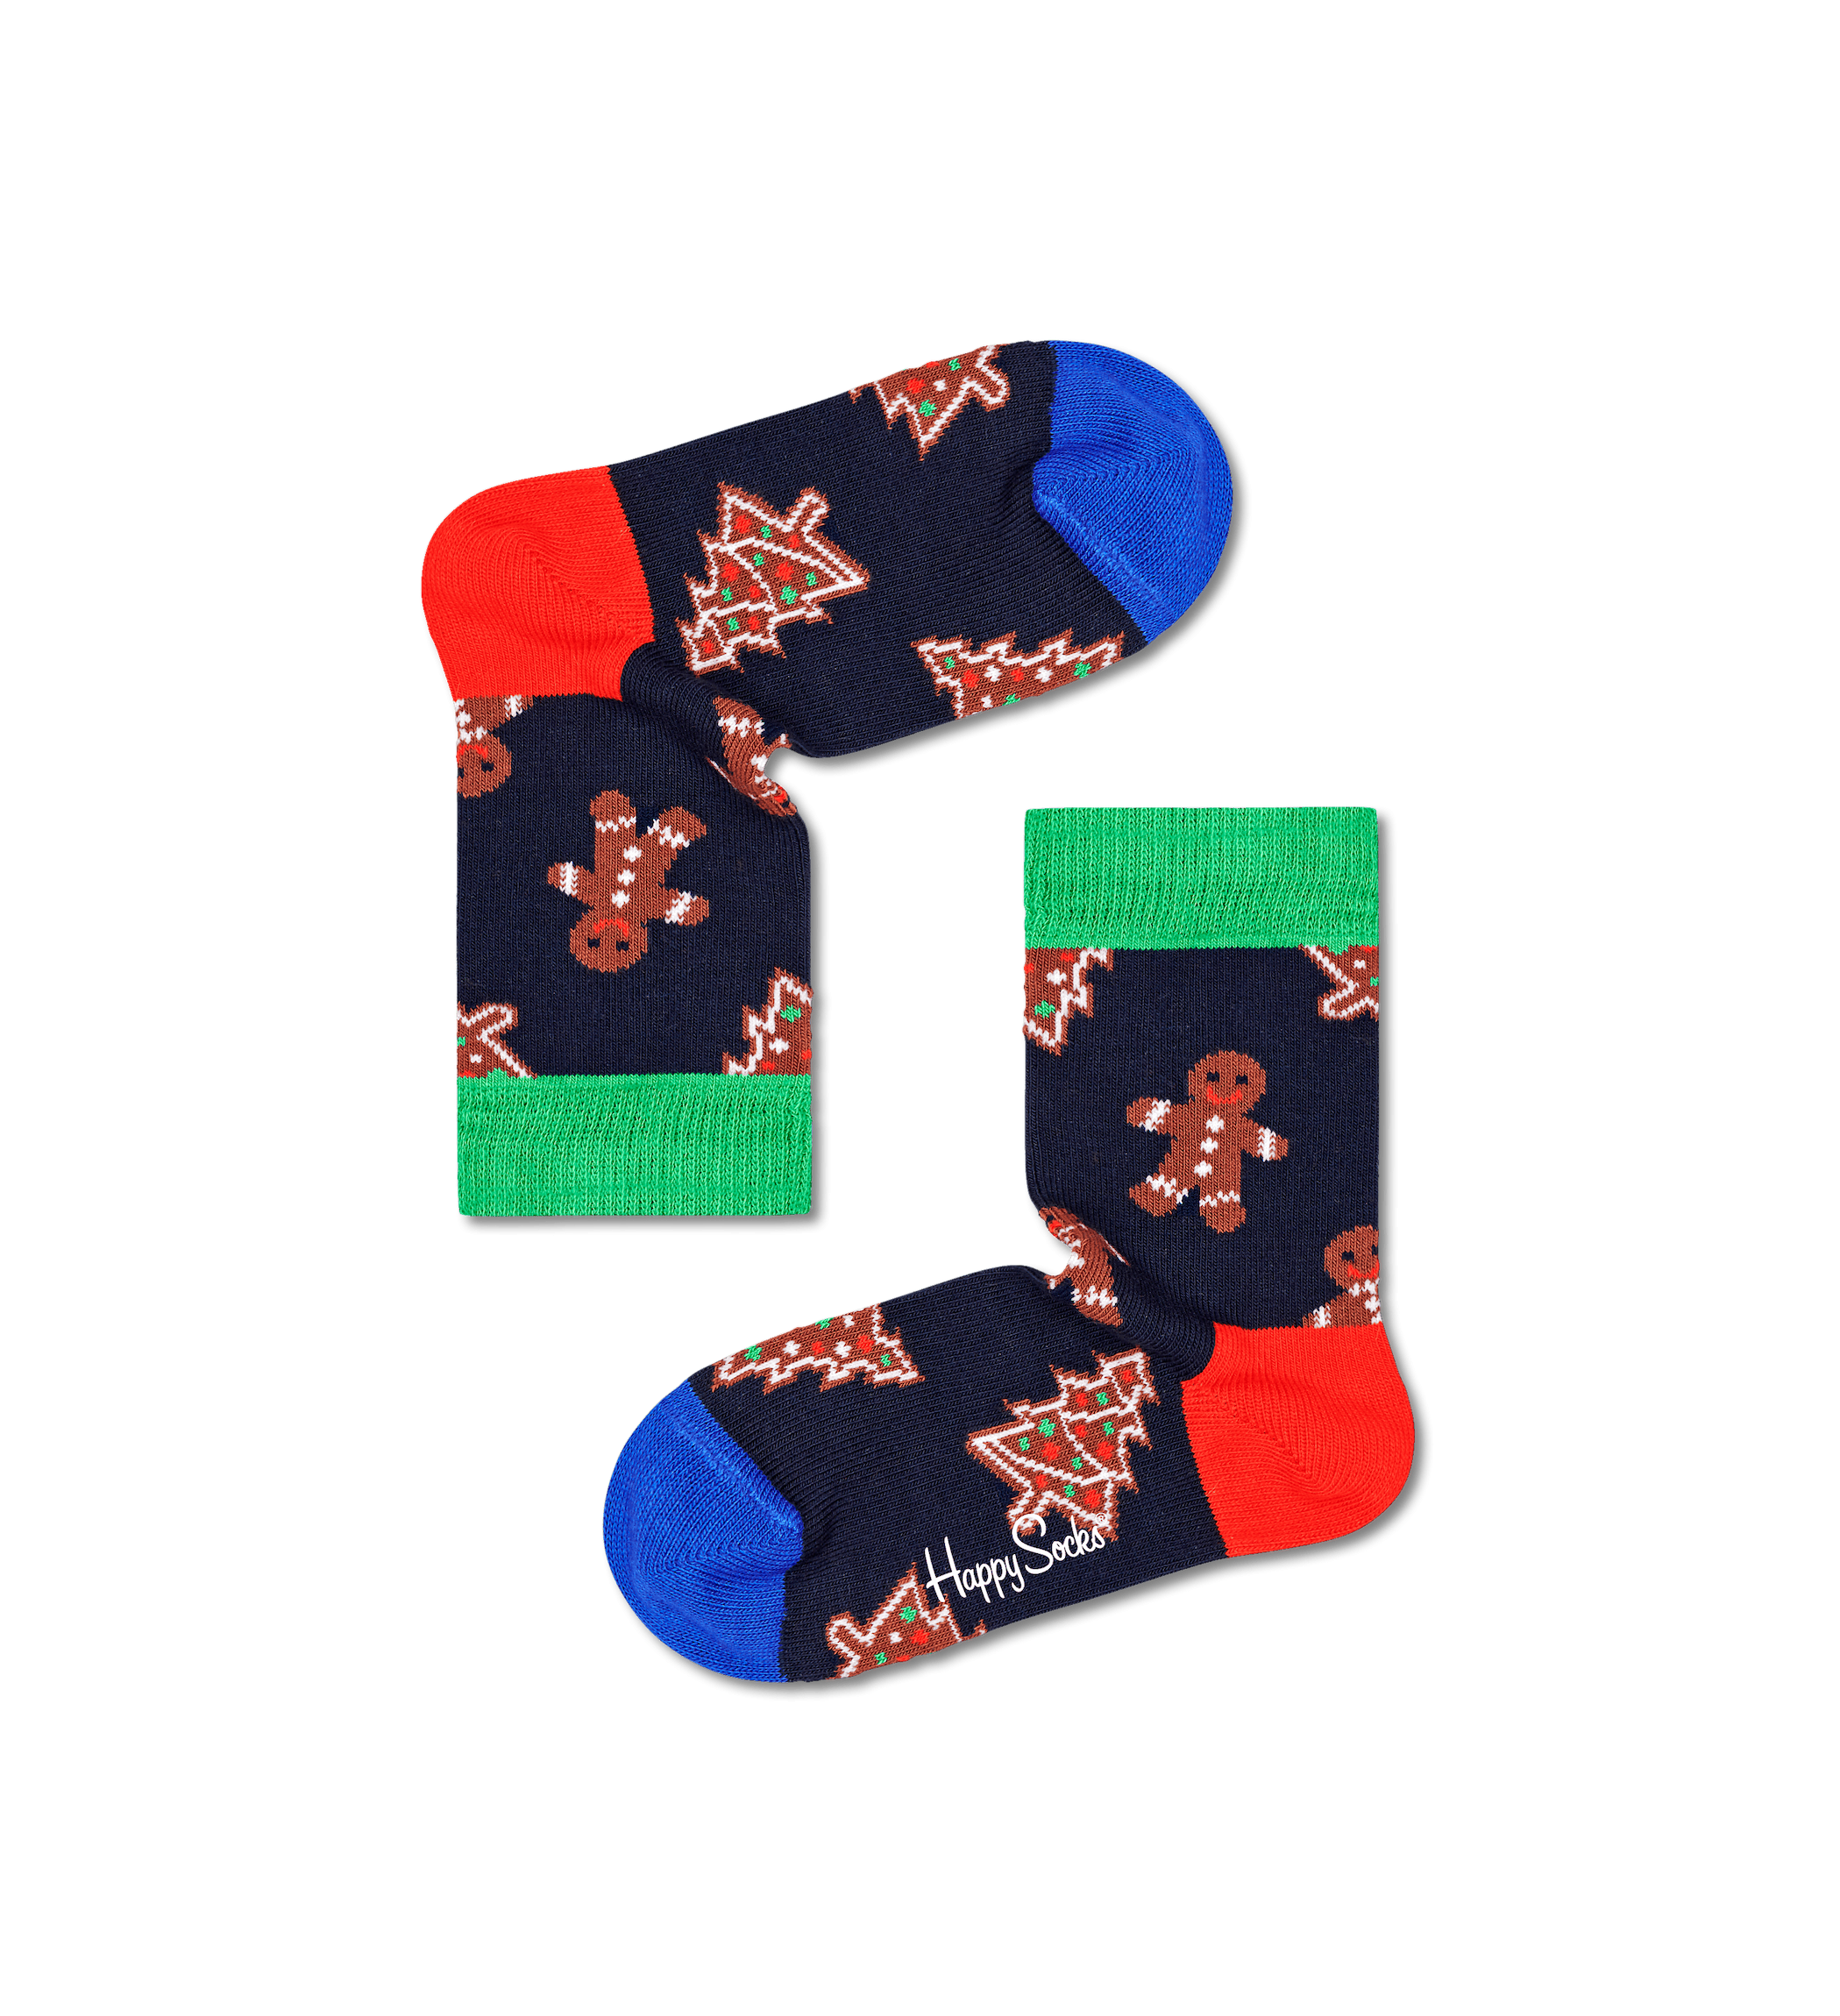 Detské modré ponožky Happy Socks s medovníčkami, vzor Gingerbread Cookies